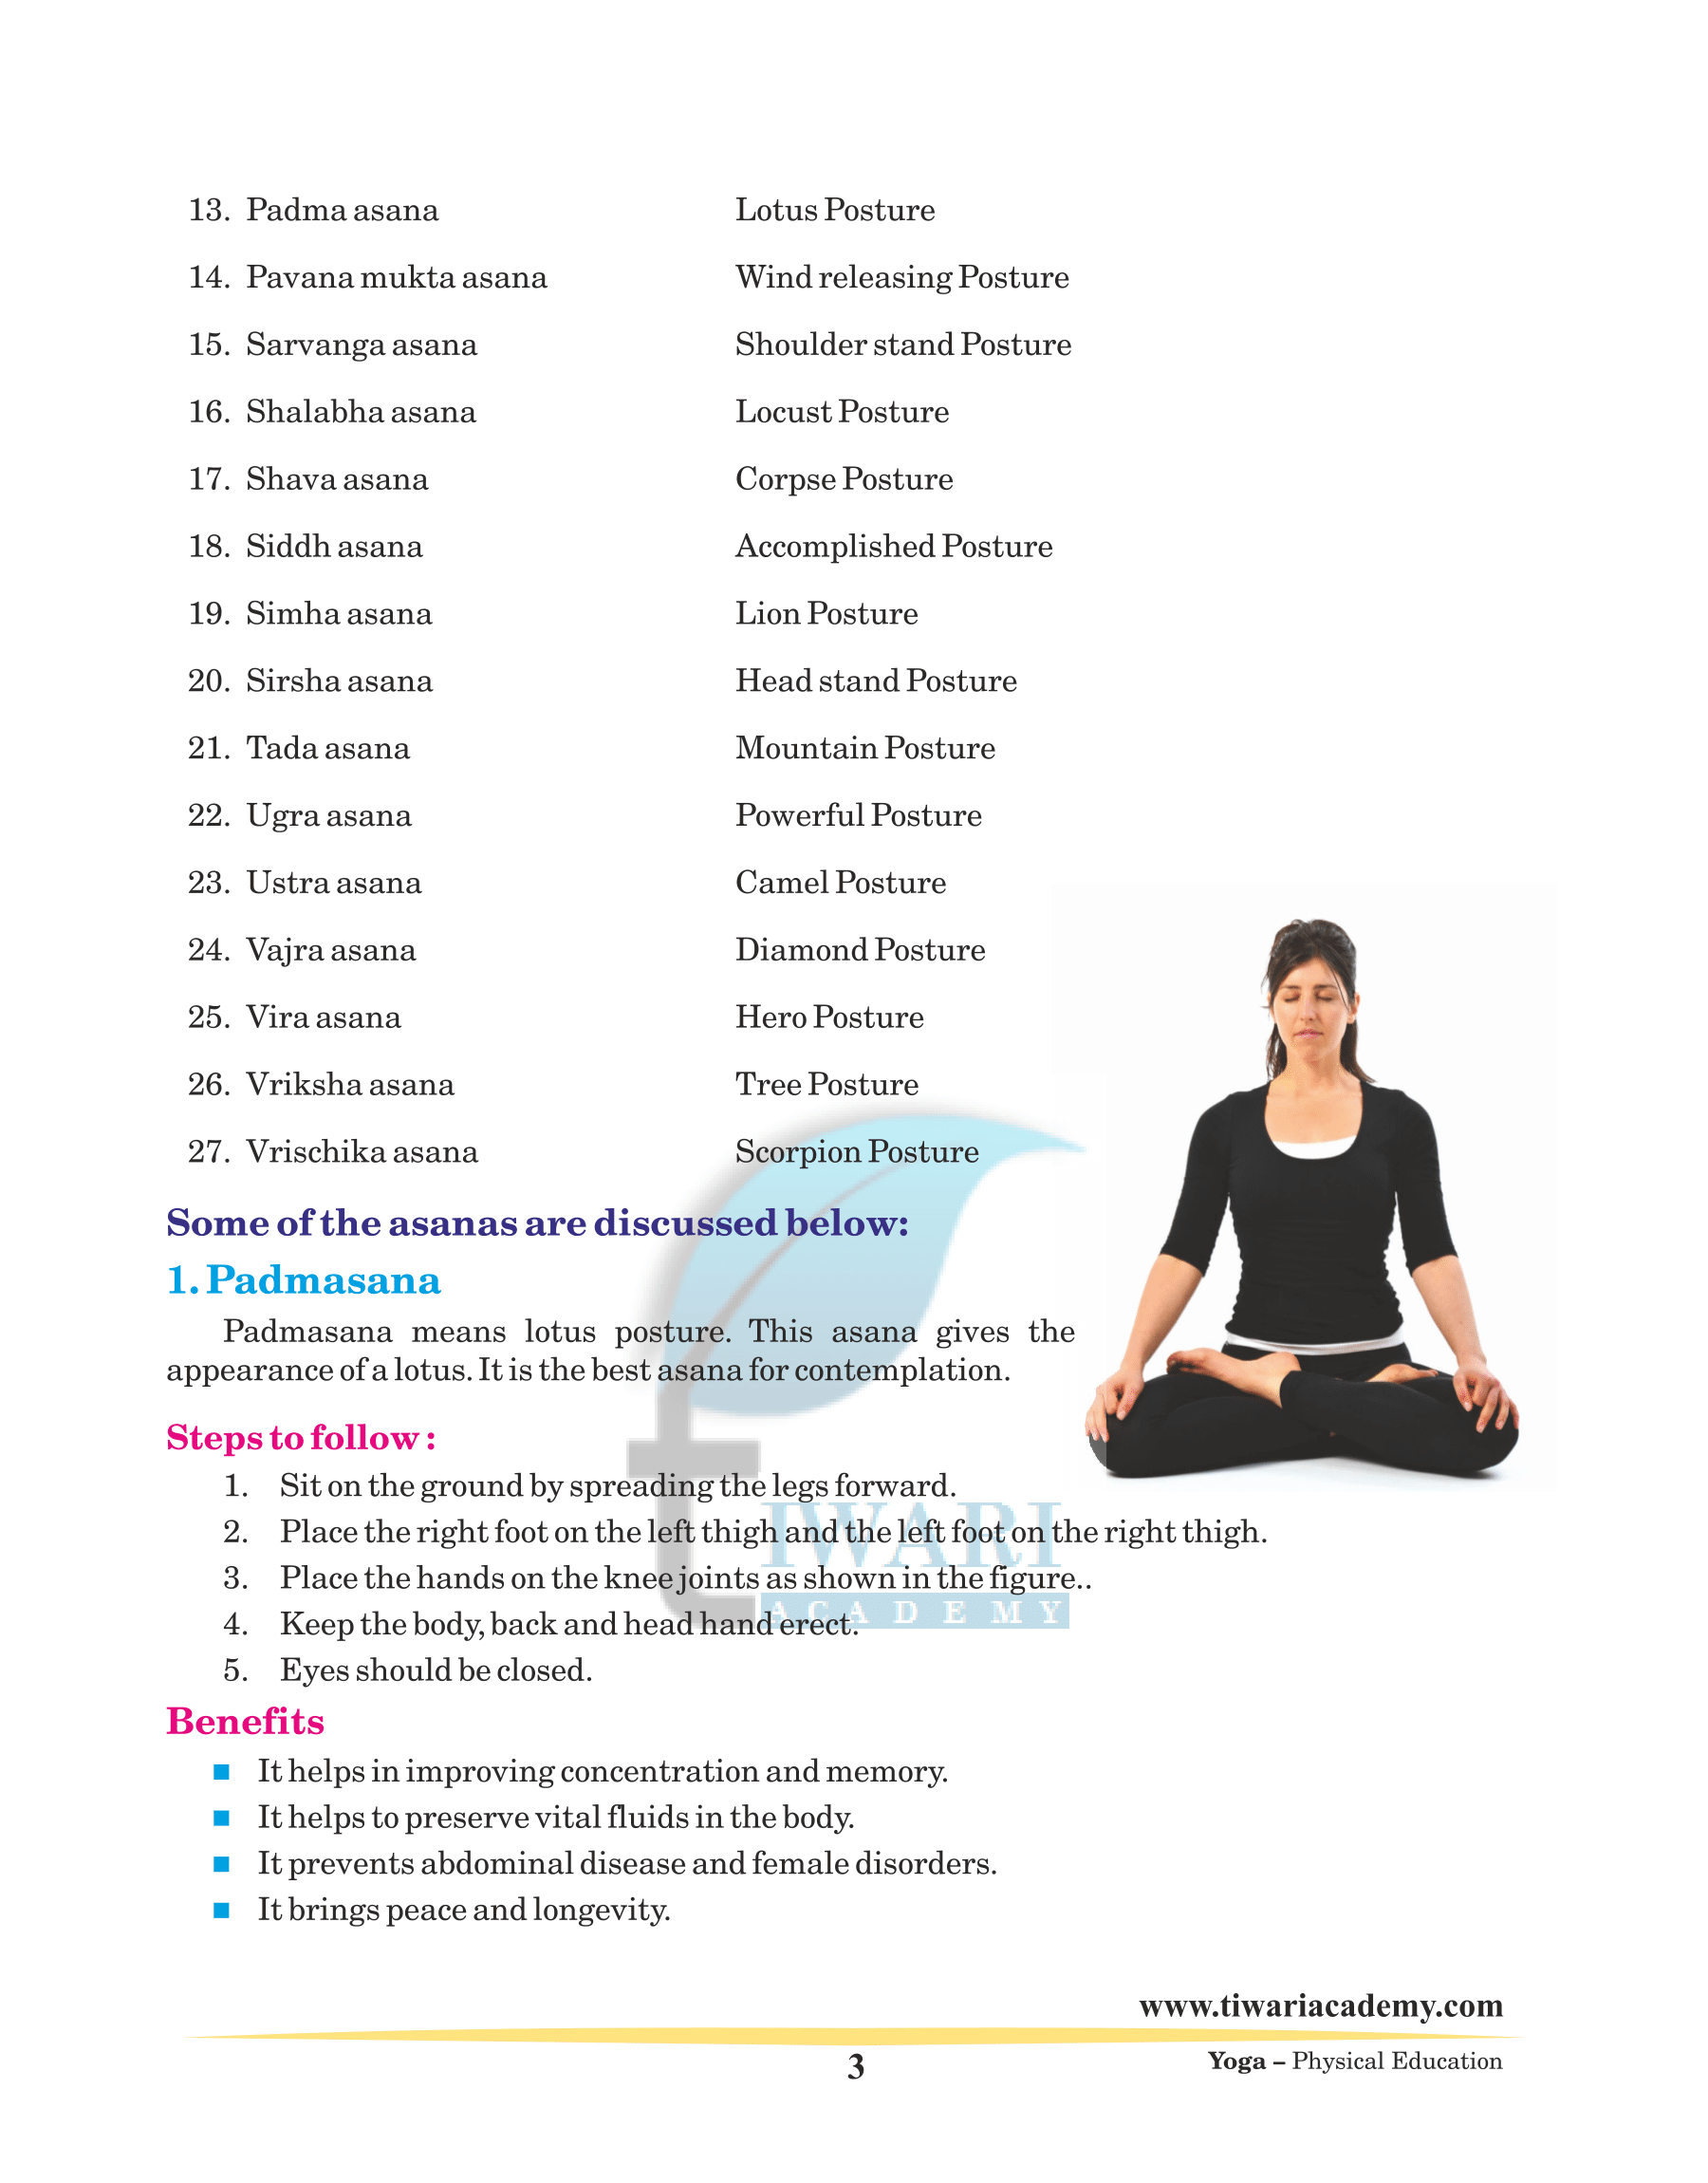 Advantages of Yoga